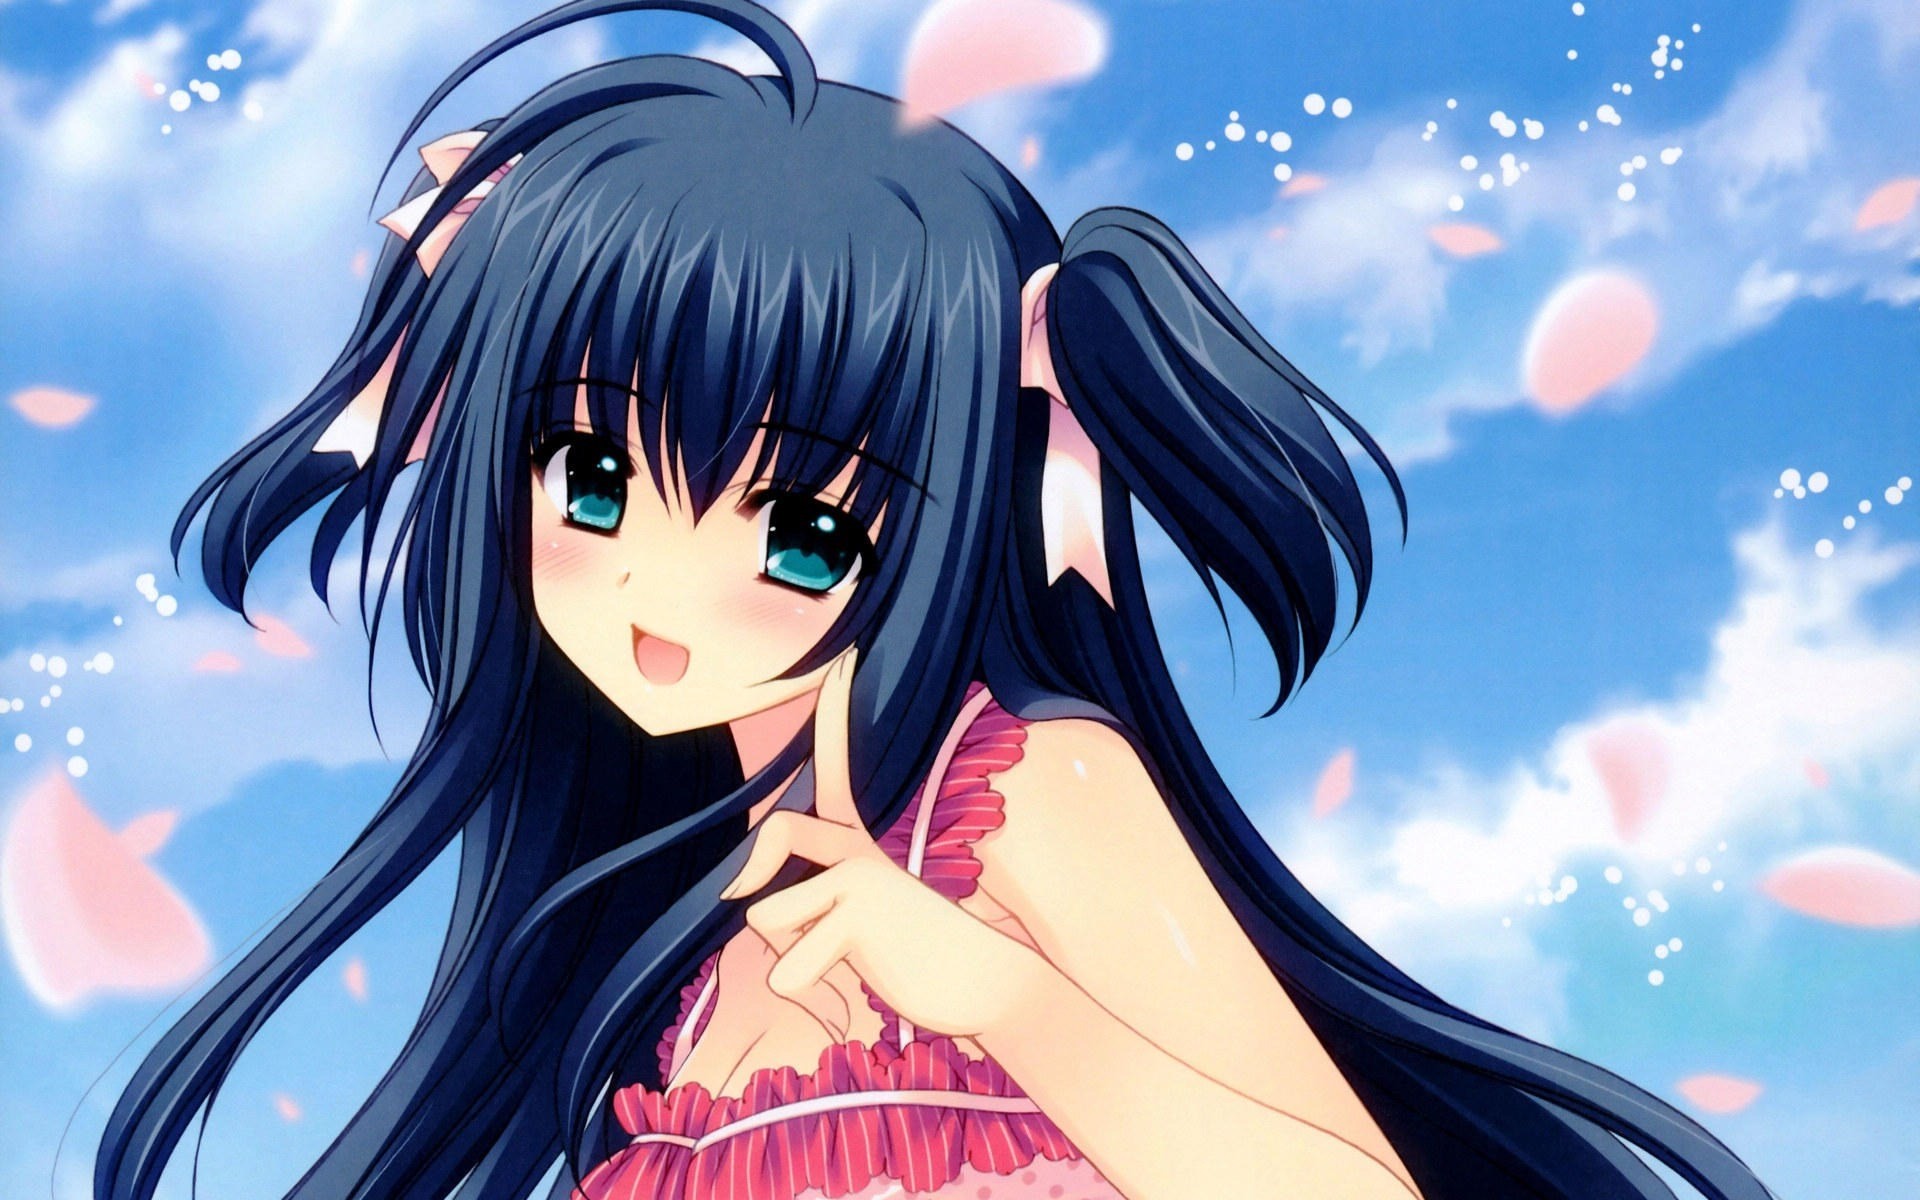 lindo fondo de pantalla de anime girl,dibujos animados,anime,cg artwork,cielo,cabello negro